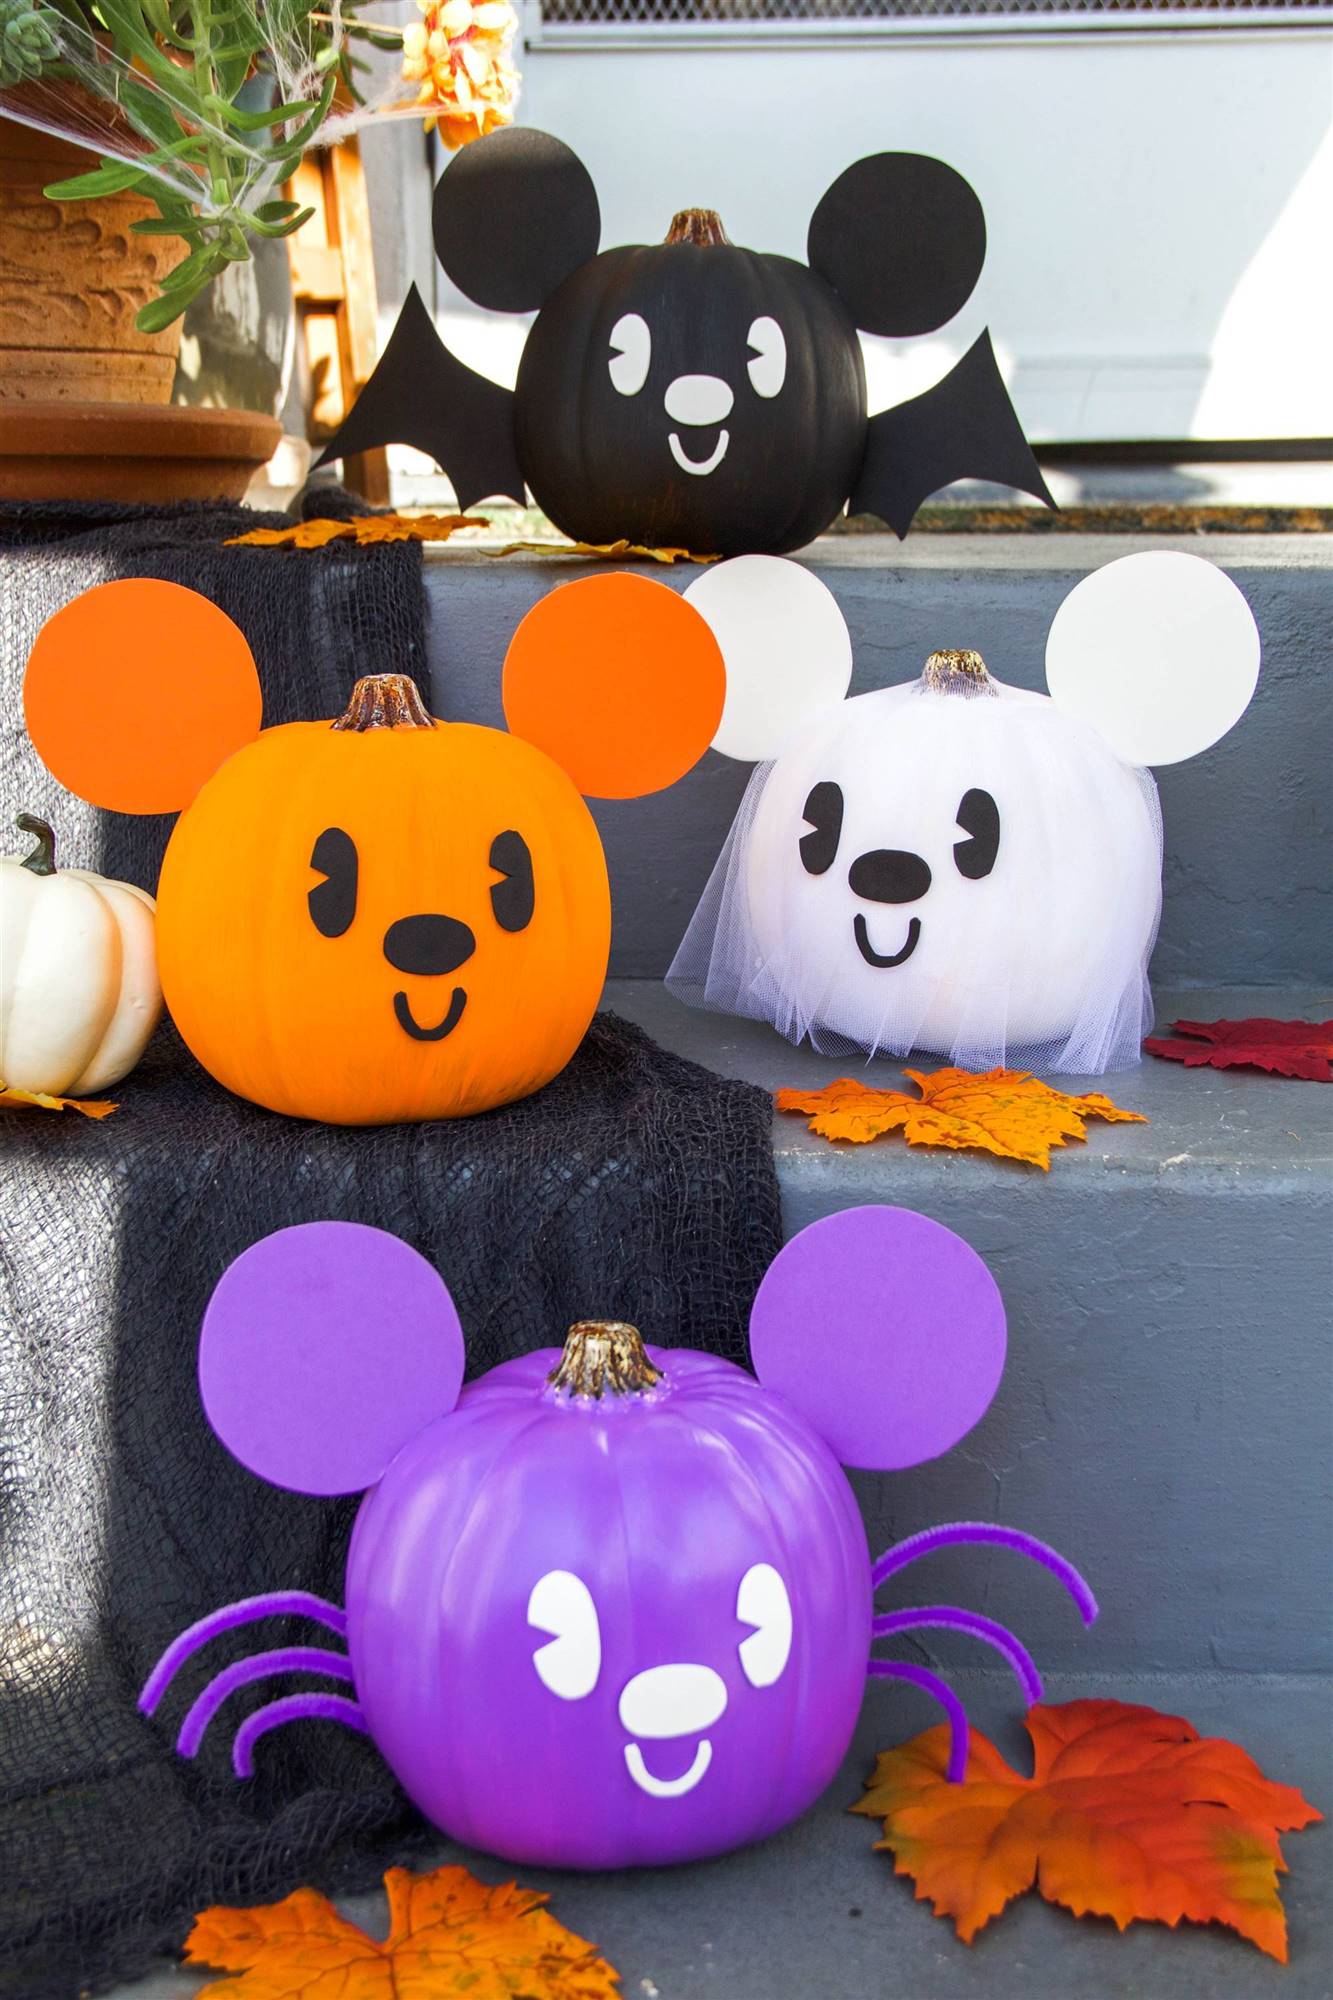 Calabazas de Halloween decoradas como personajes de Disney.